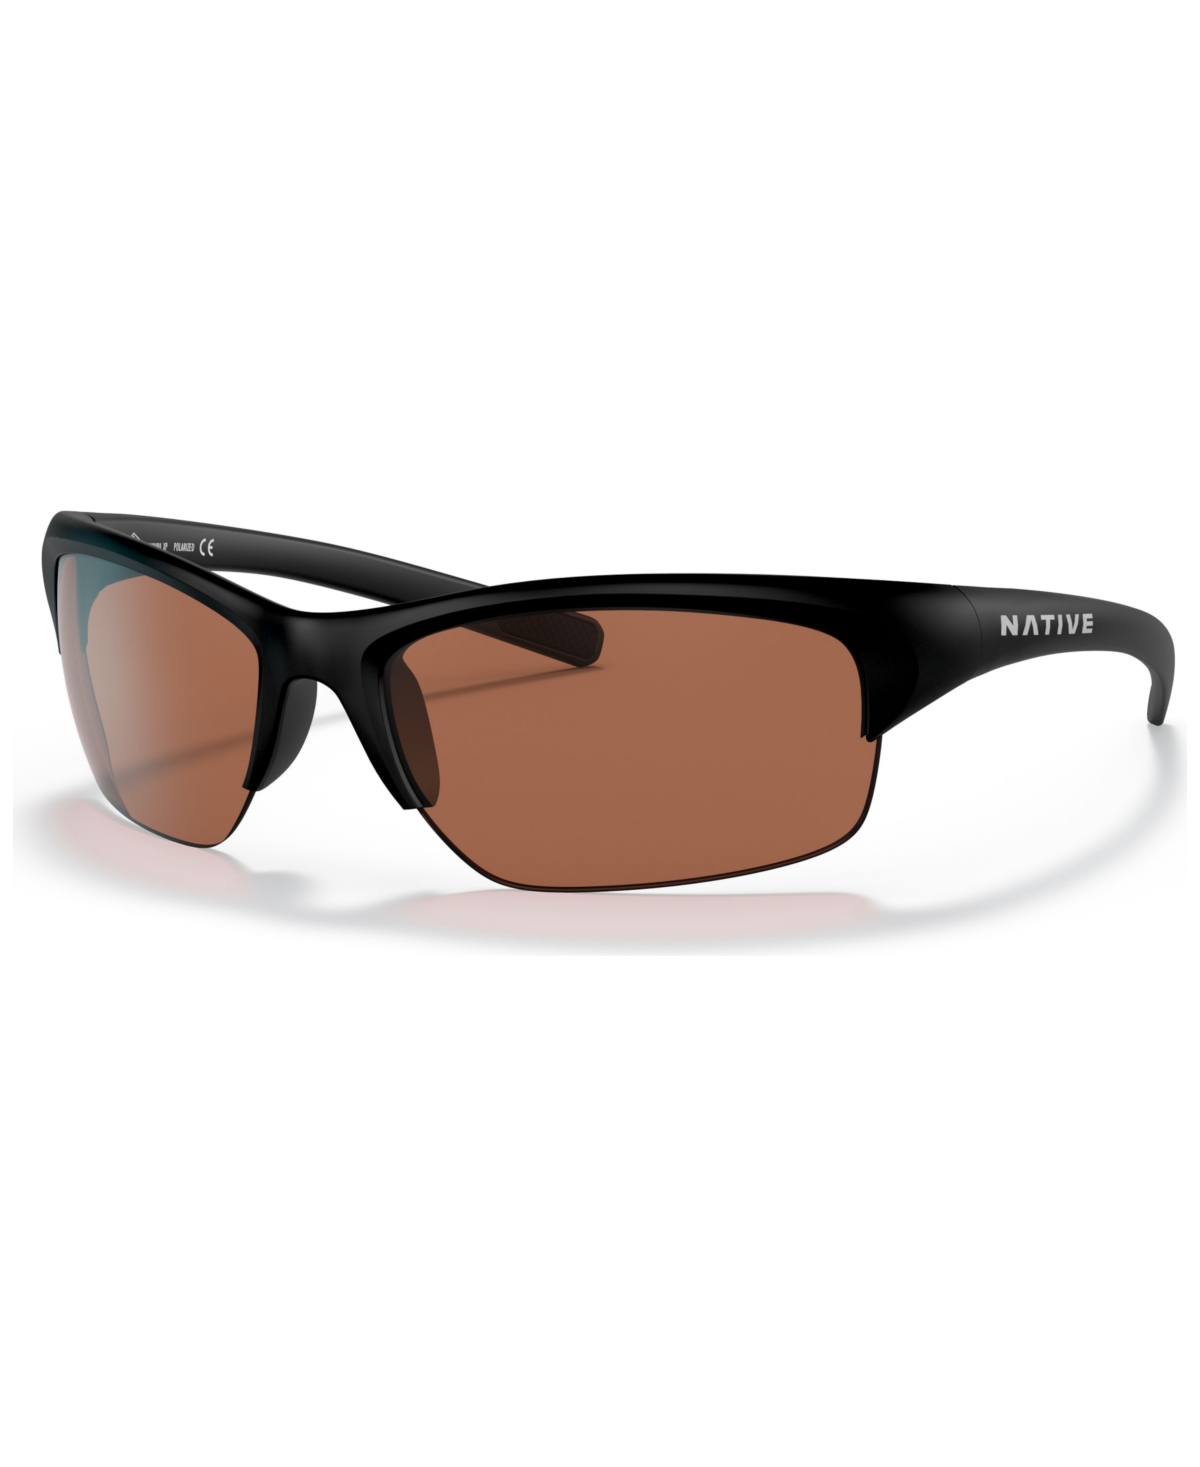 Native Men's Endura Xp Polarized Sunglasses, Polar XD9029 - Matte Black